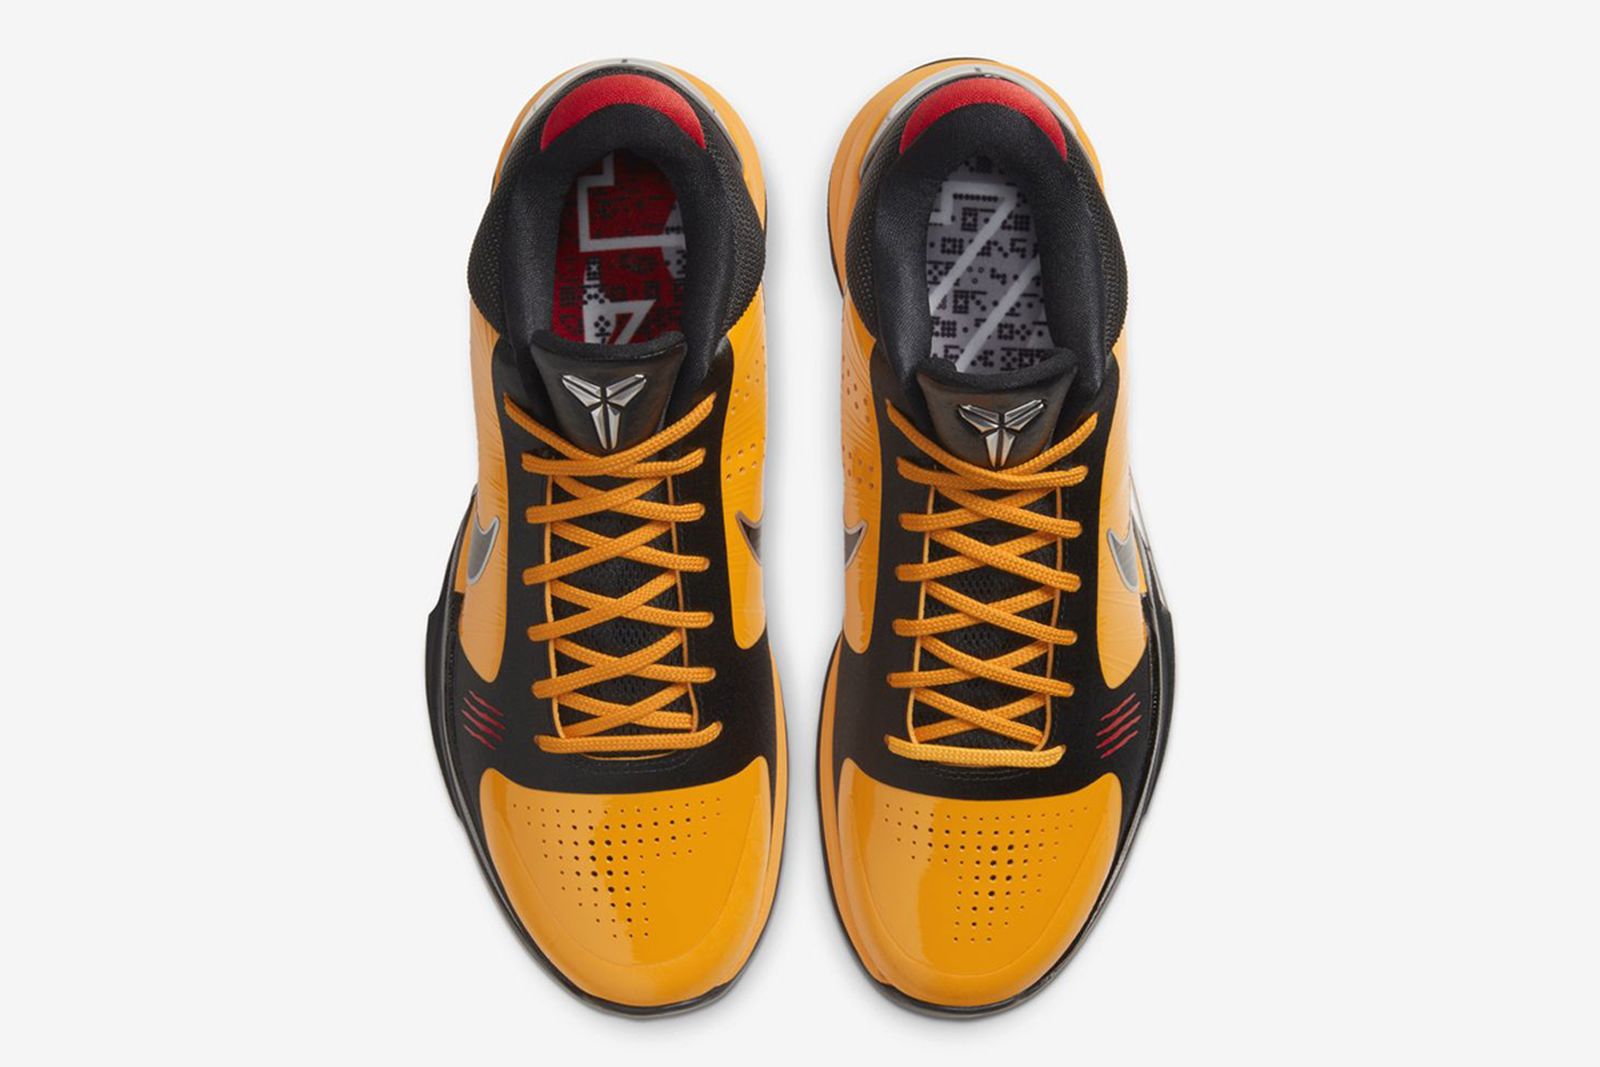 Nike Kobe 5 Protro “Bruce Lee”